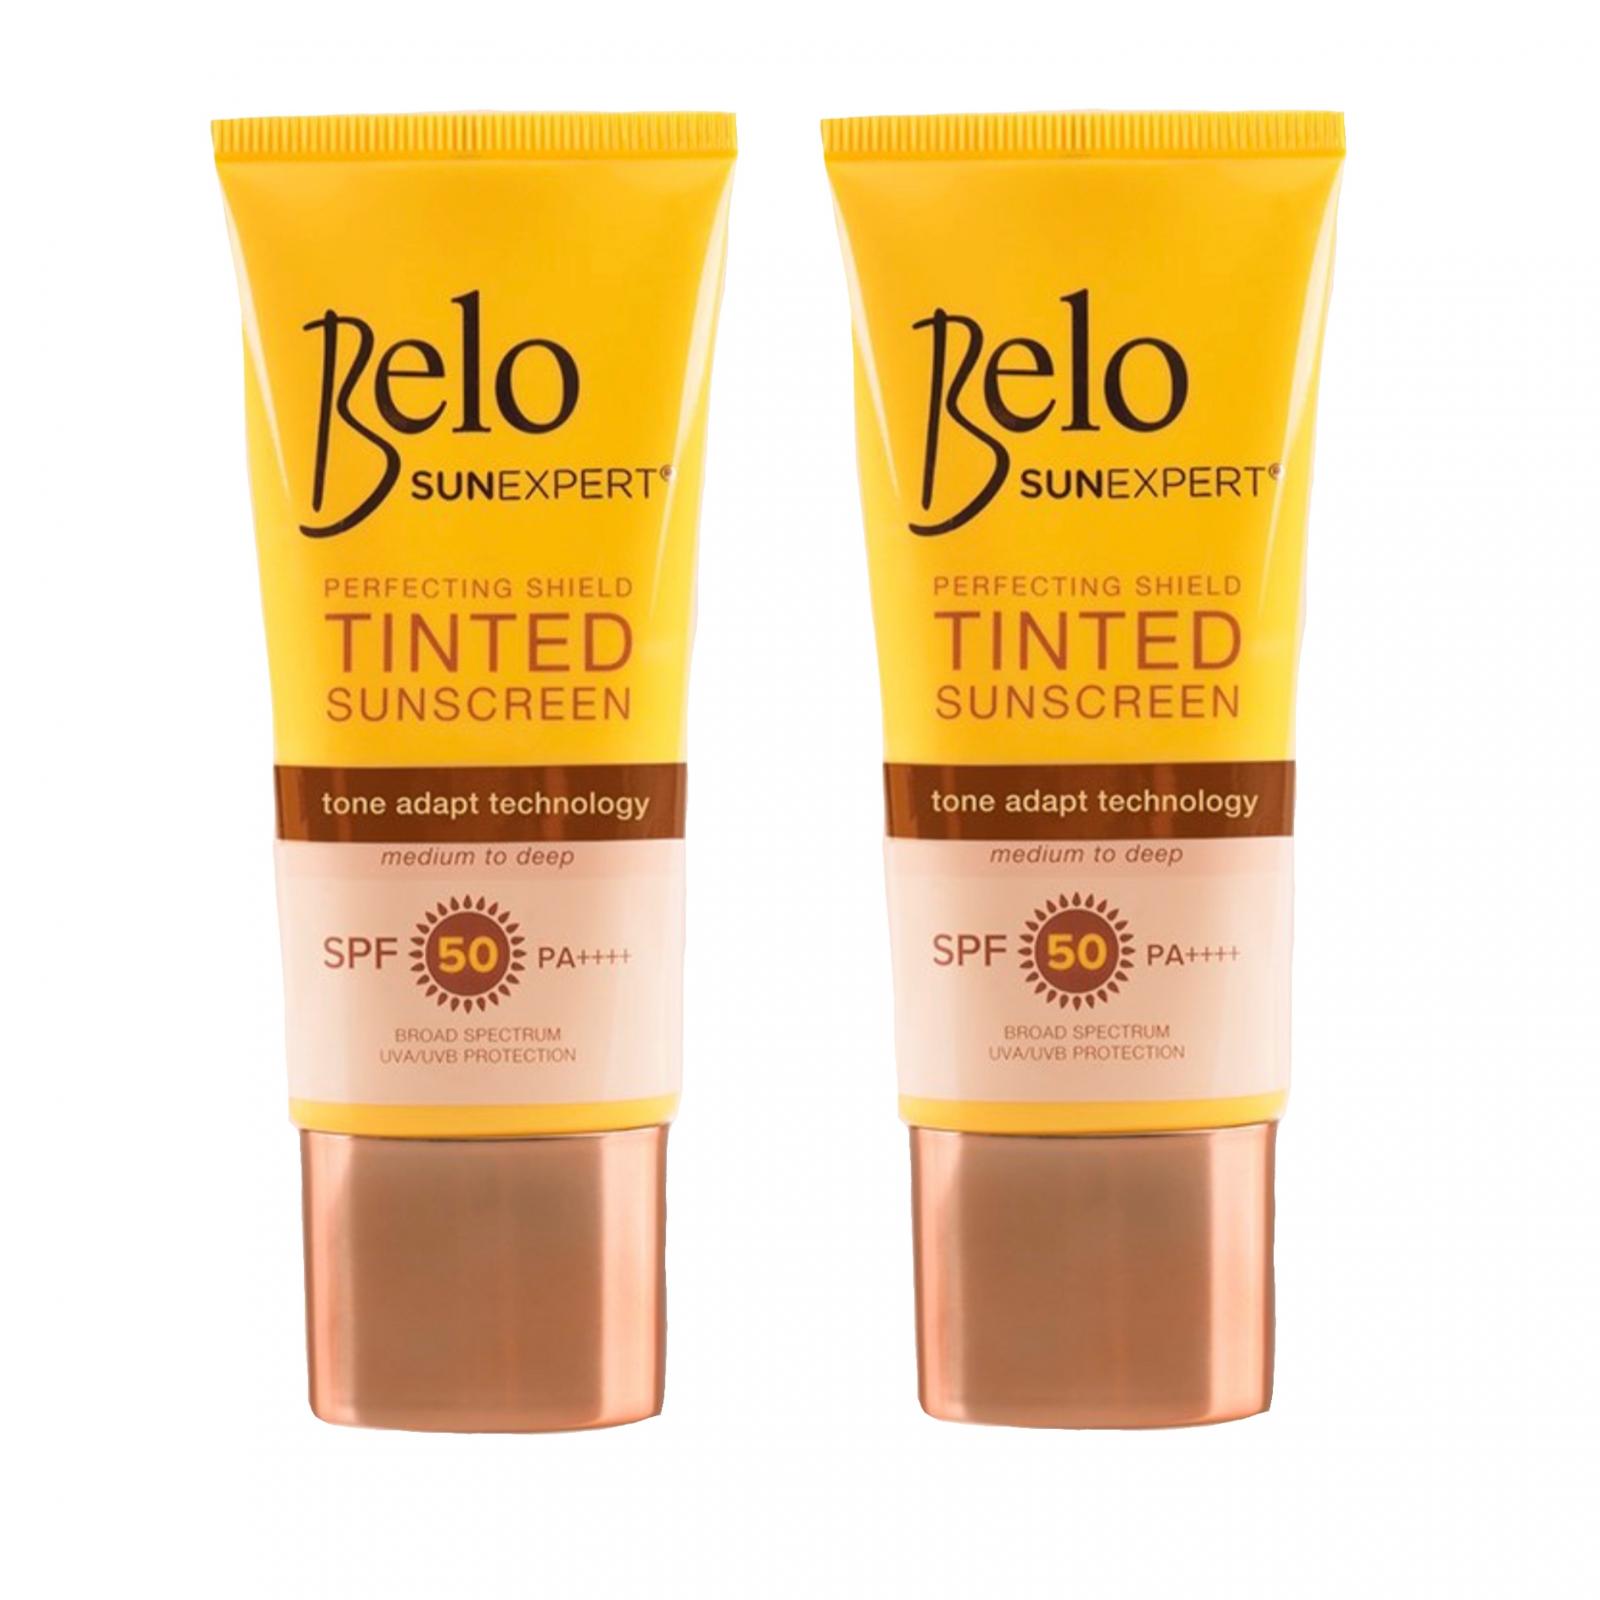 Belo SunExpert Sunscreen